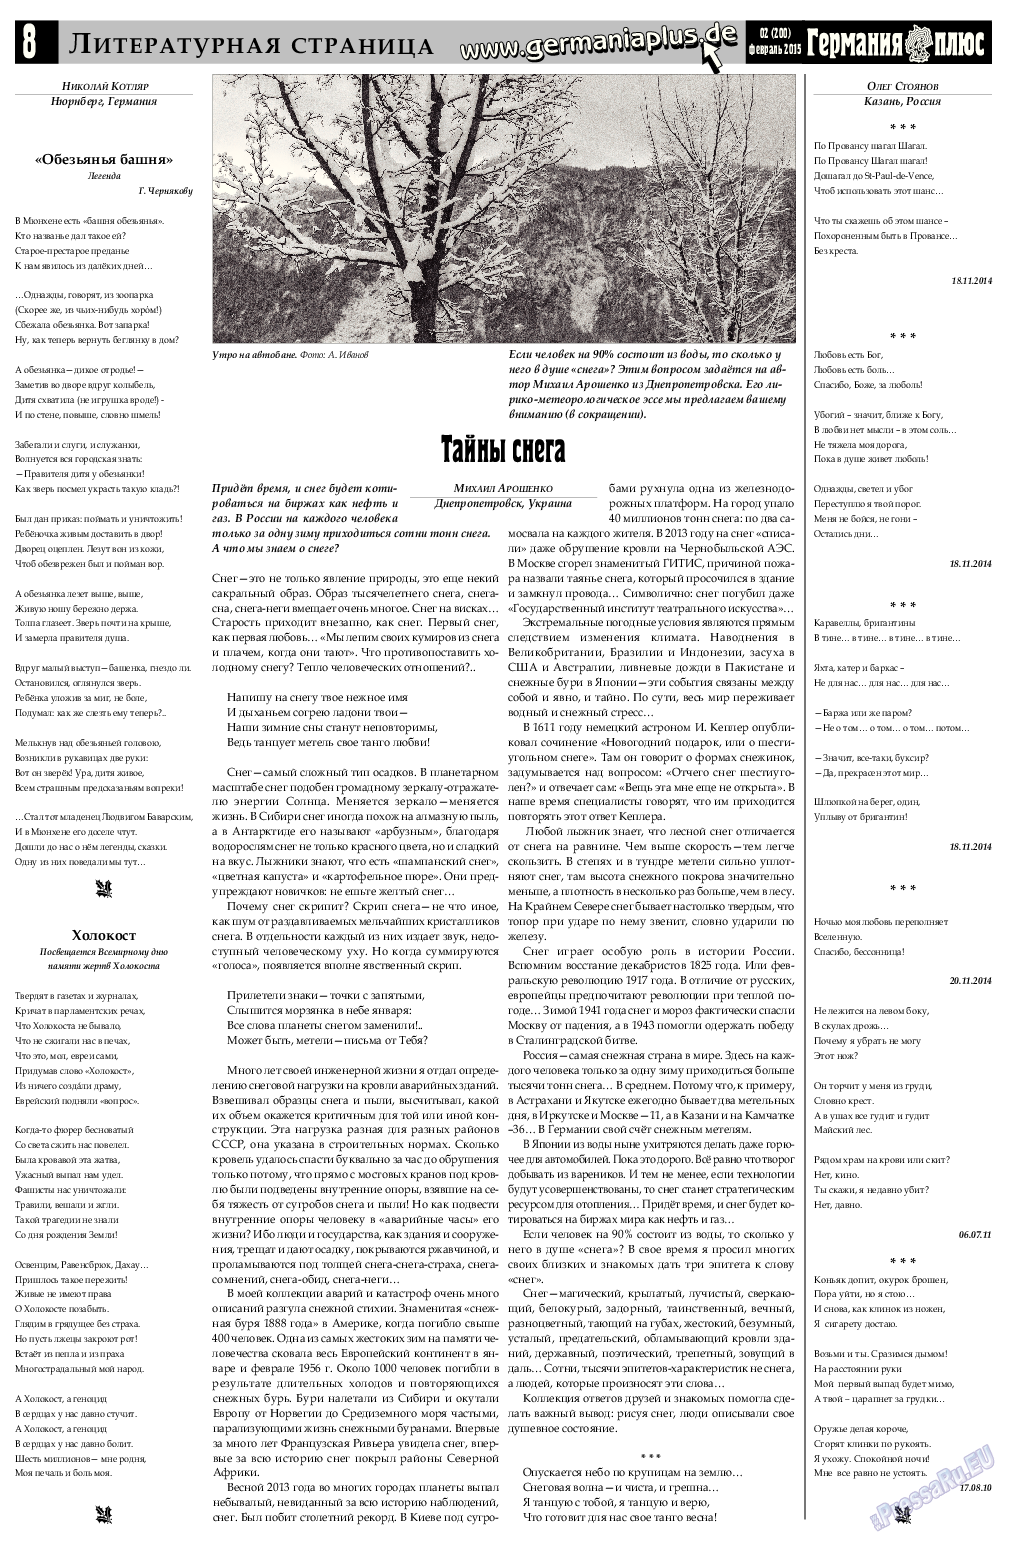 Германия плюс (газета). 2015 год, номер 2, стр. 8